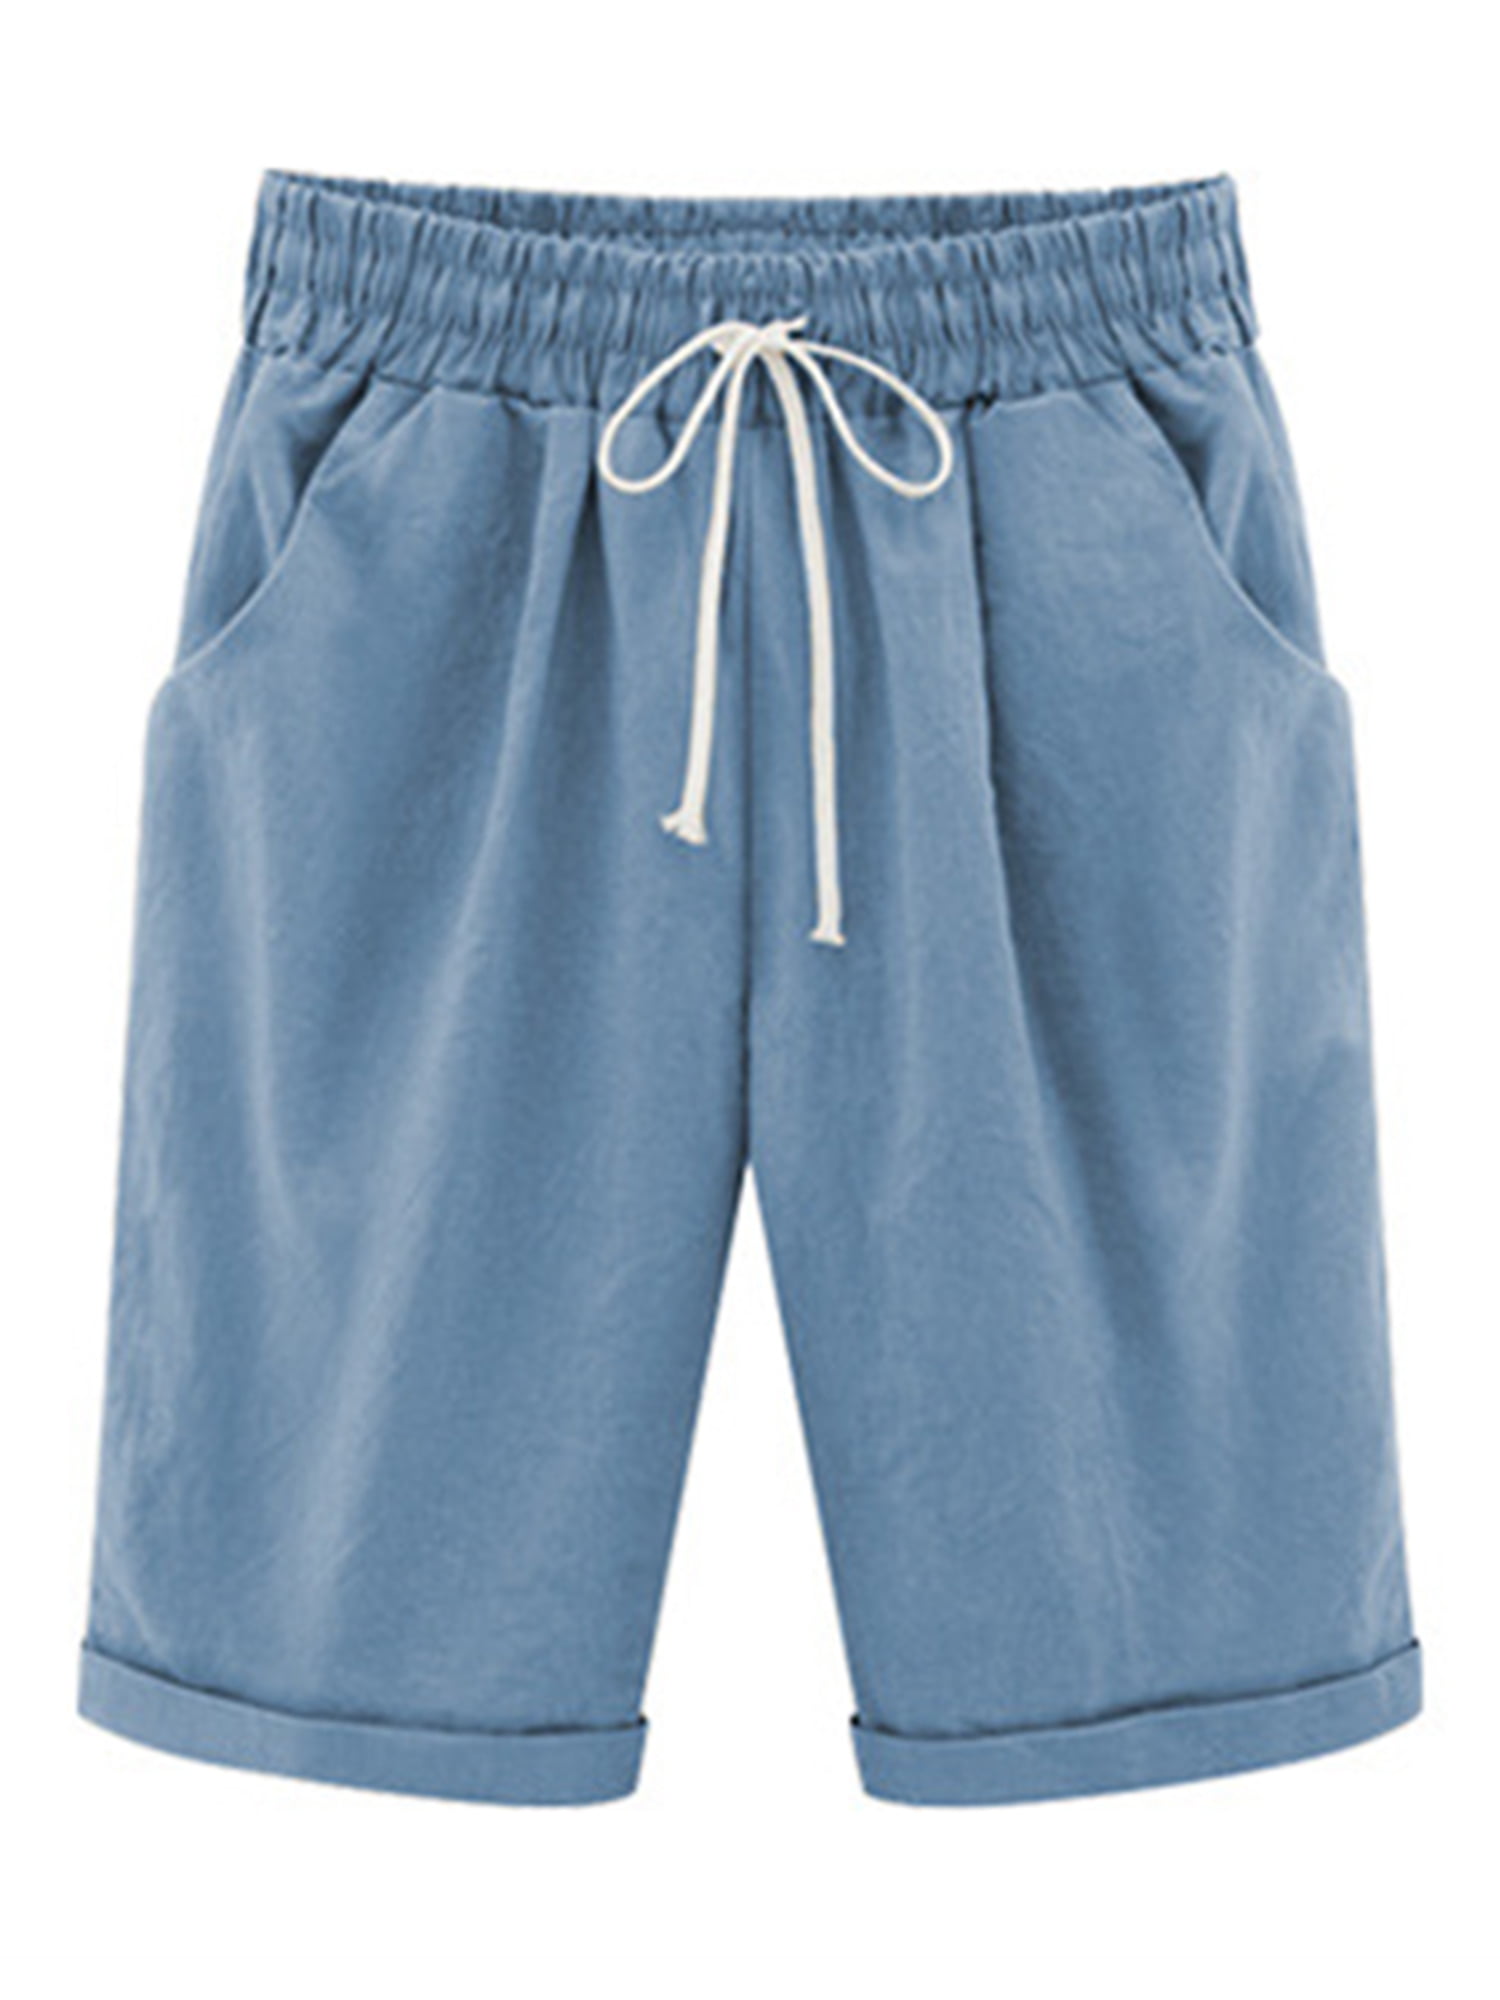 Malo Cotton Shorts & Bermuda Shorts Womens Clothing Shorts Knee-length shorts and long shorts 